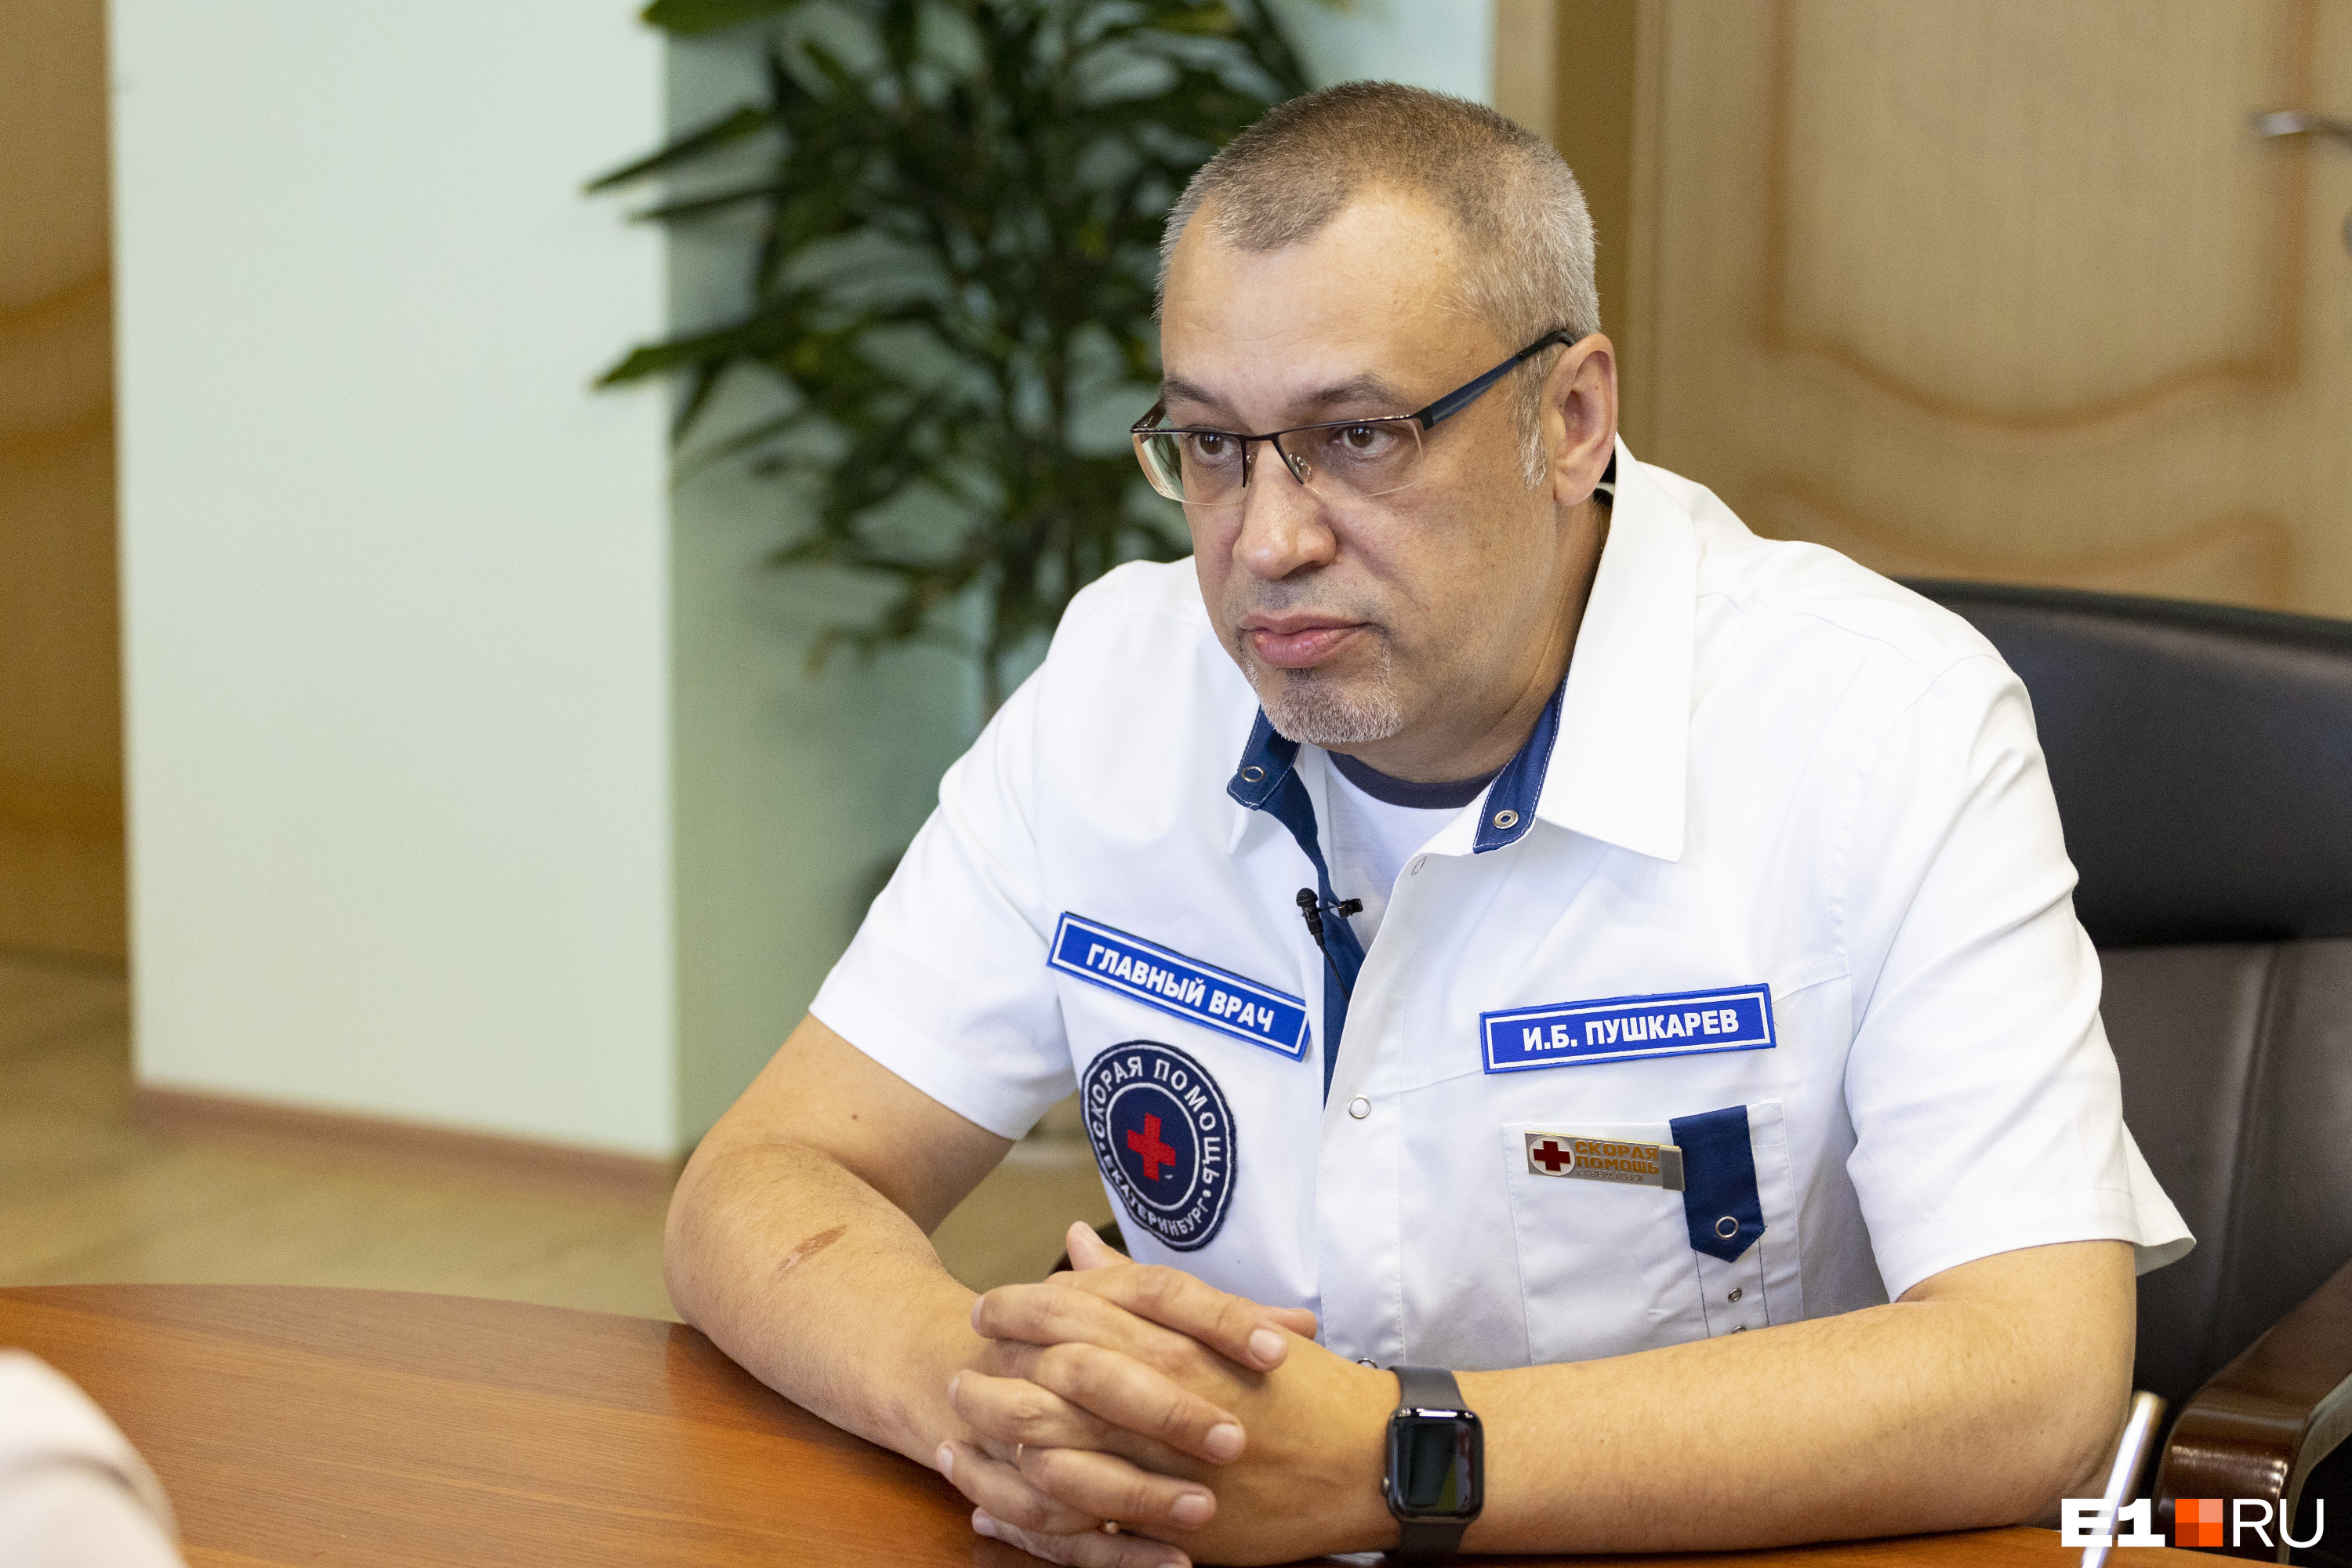 «Средняя зарплата доктора — 104 тысячи». Интервью с главврачом скорой помощи Екатеринбурга